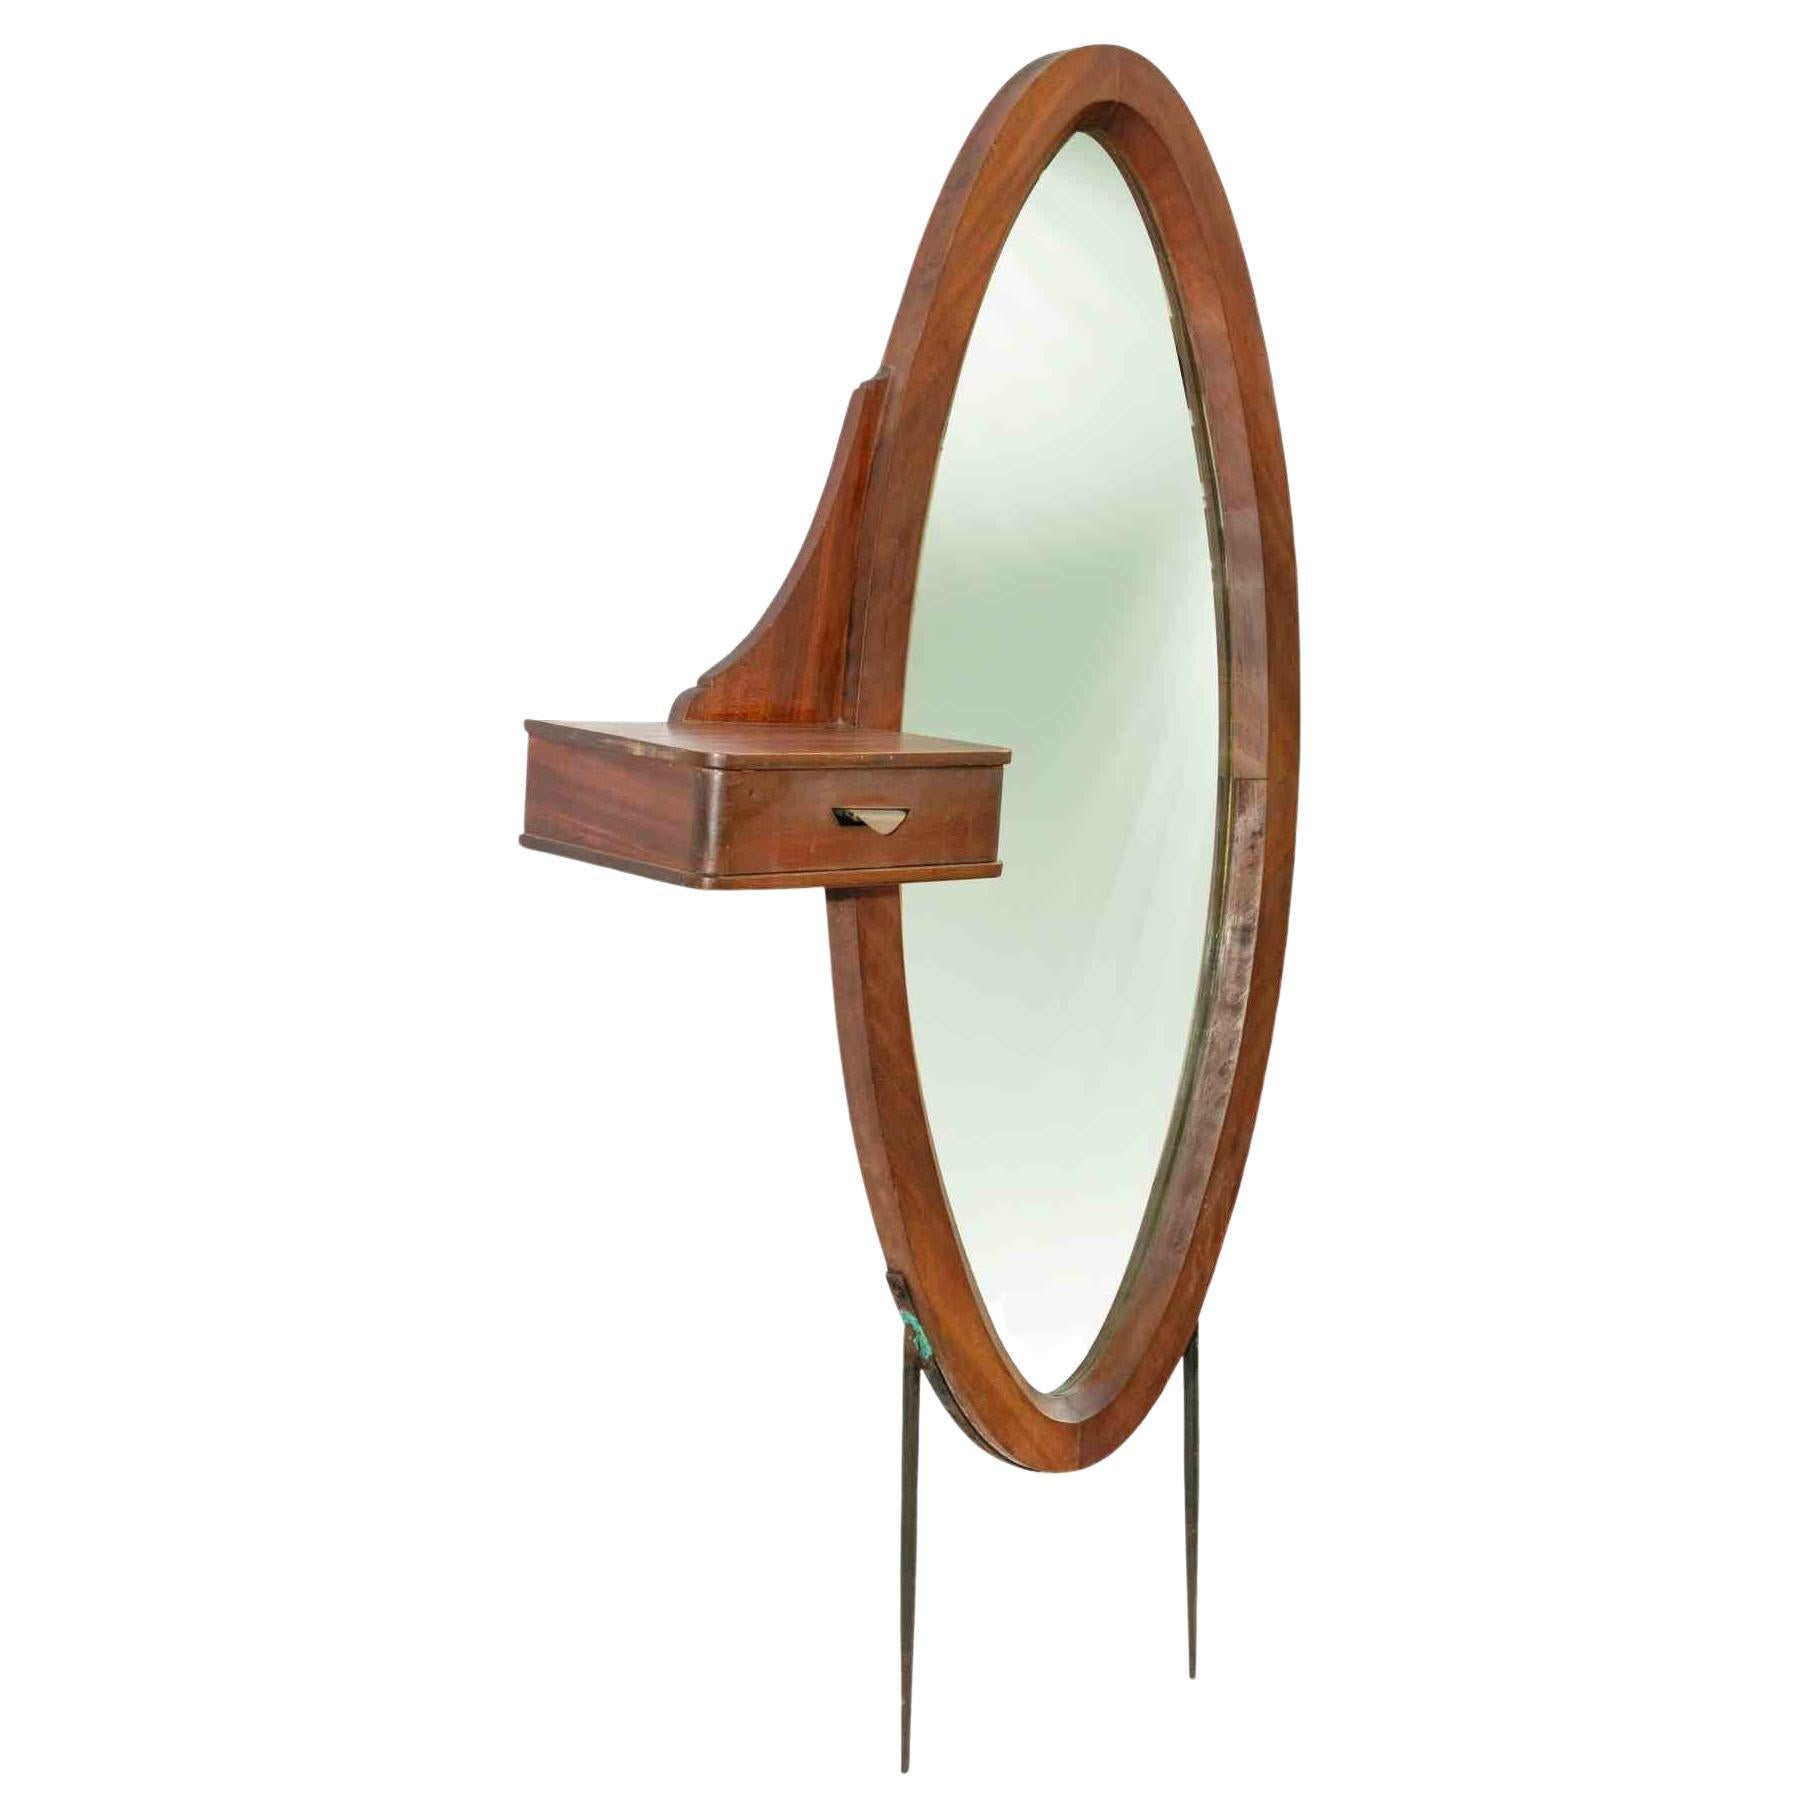 Der ovale Vintage-Spiegel ist ein originelles Designobjekt aus der Mitte des 20. Jahrhunderts.

Ein Vintage-Holzspiegel mit einer kleinen Schublade. Can mit oder ohne Beine montiert werden.

Verpassen Sie nicht diesen Design-Spiegel